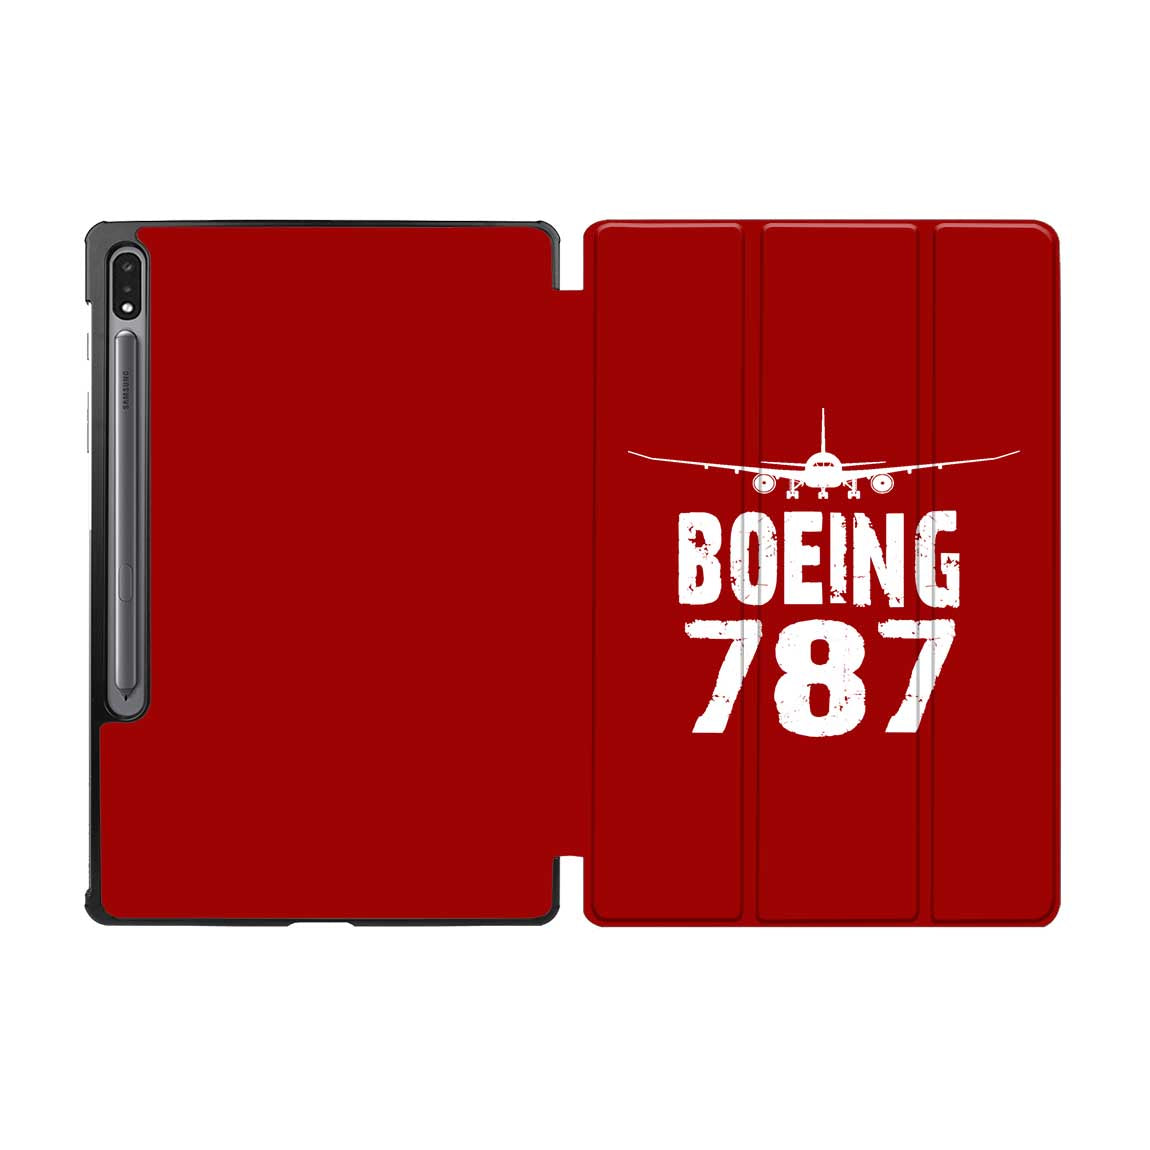 Boeing 787 & Plane Designed Samsung Tablet Cases